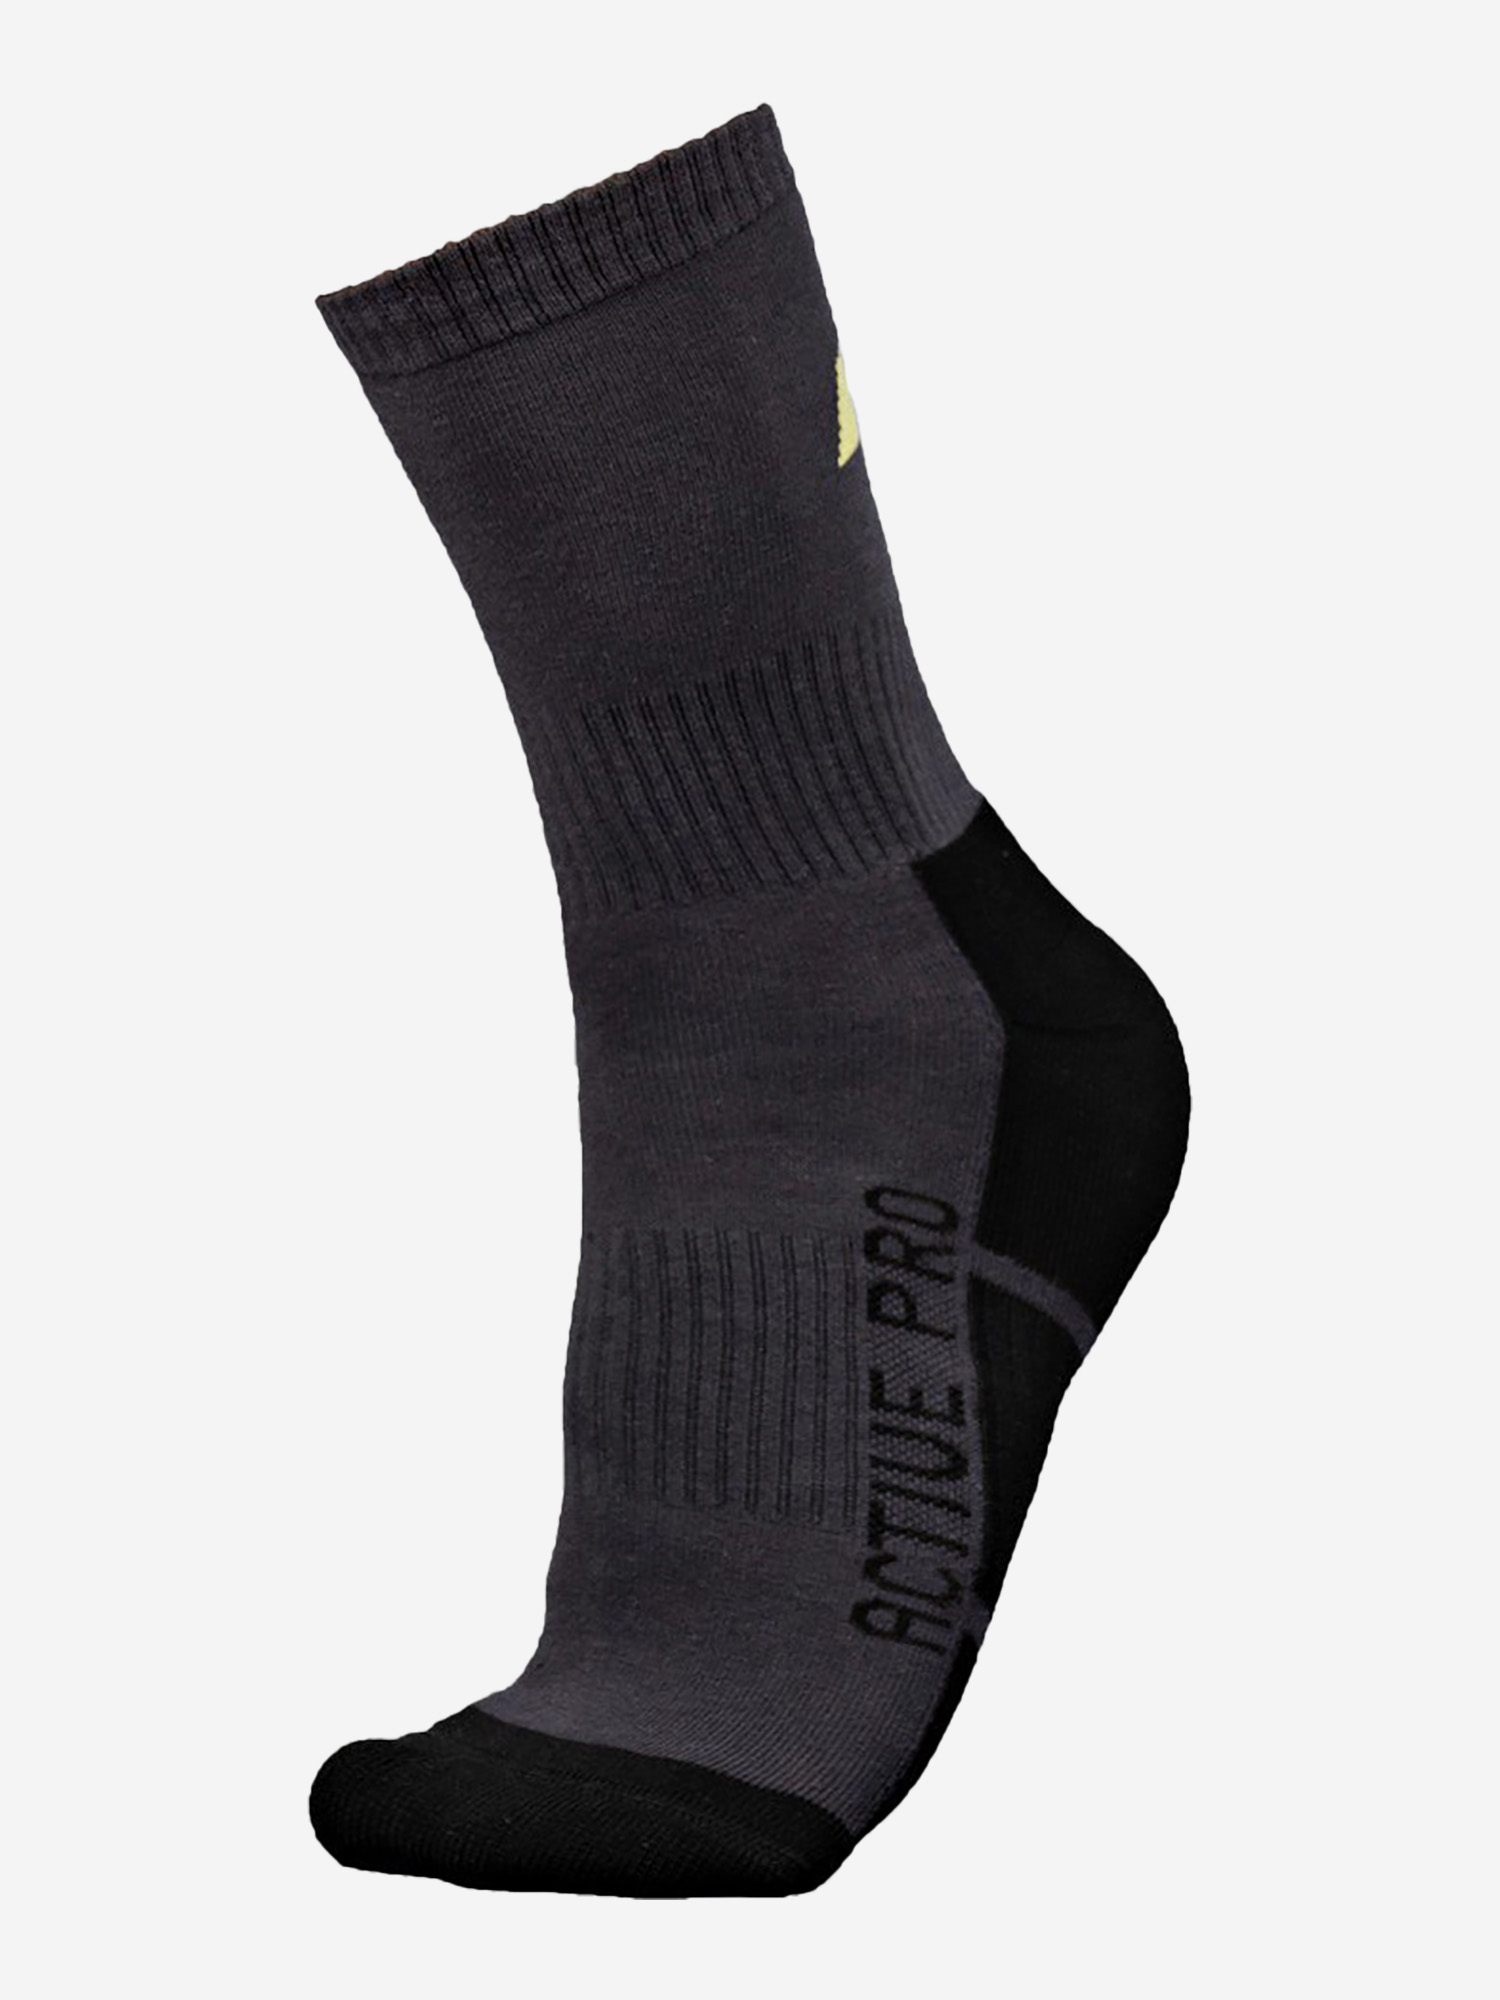 Носки Thermo Active, Мужские, цвет Черный, Черный носки хлопковые diwari active ультракороткие